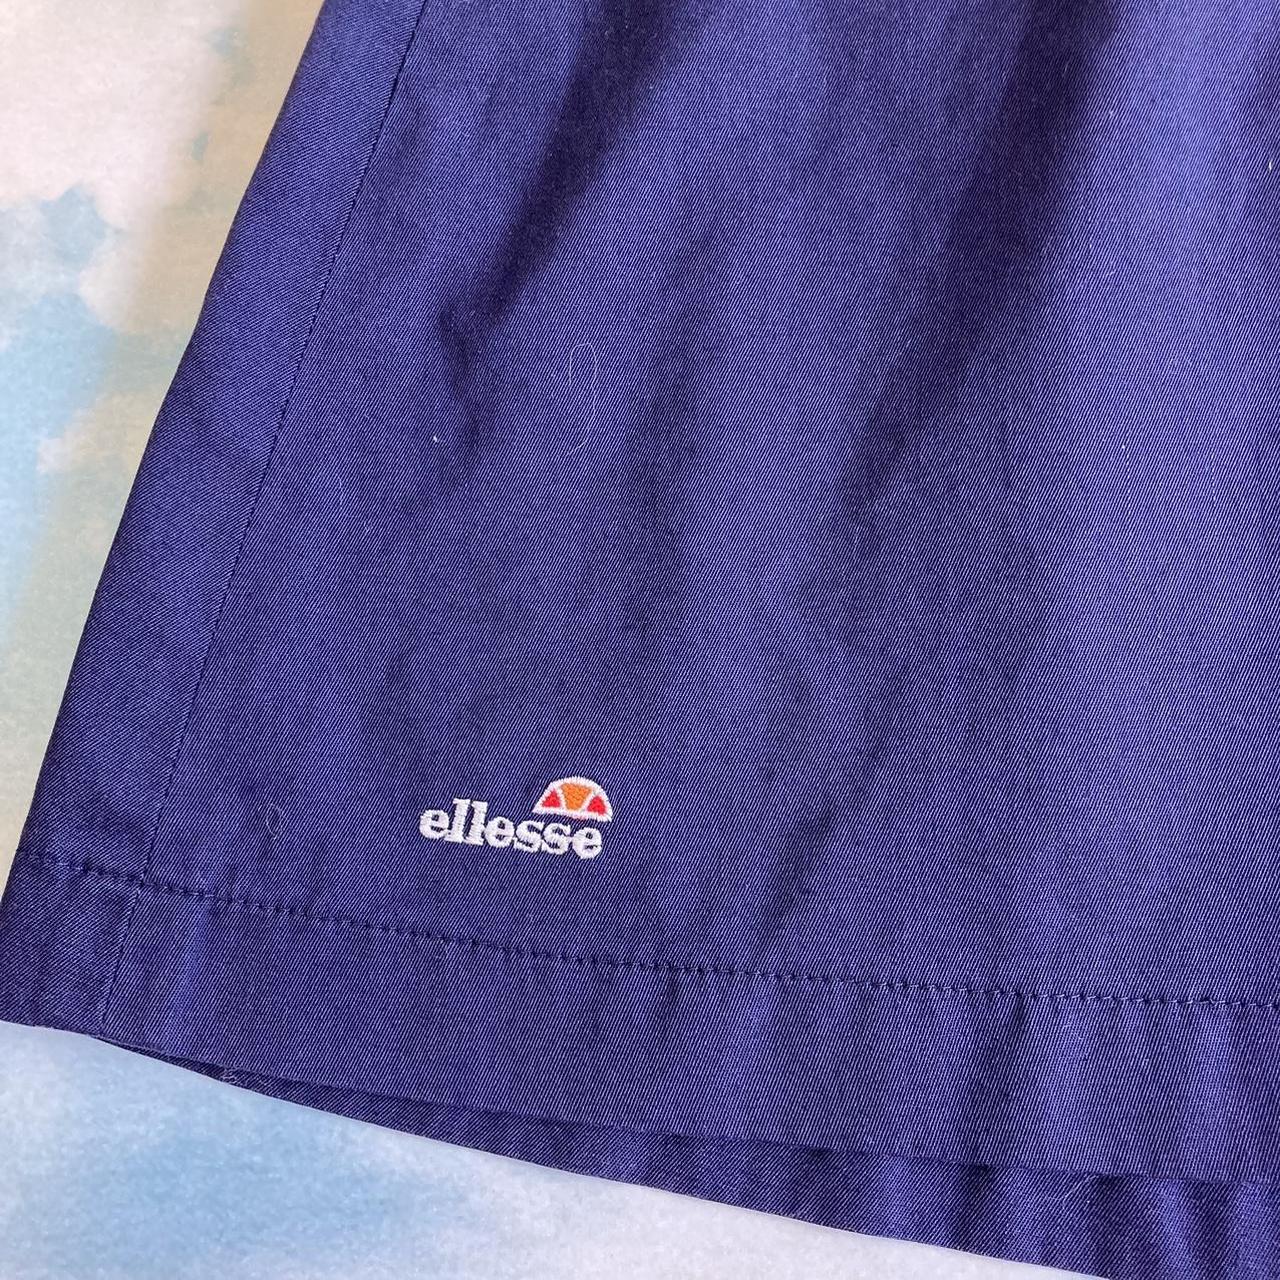 Ellesse Women's Blue and Navy Skirt (2)